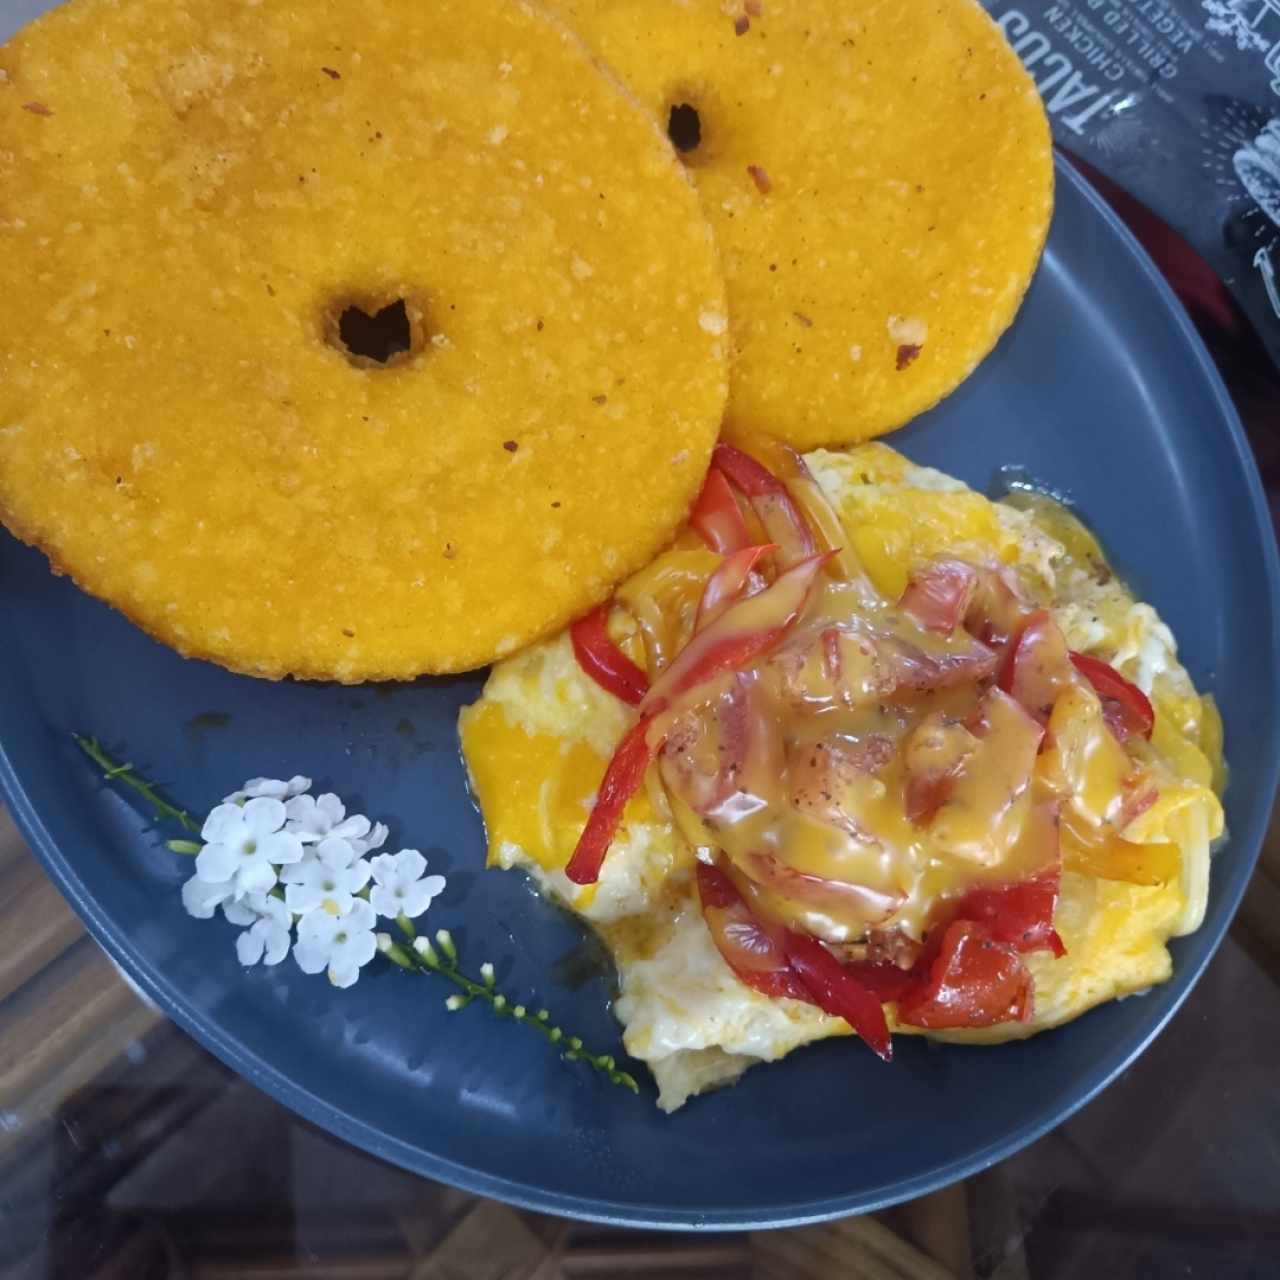 Huevos Revuelto con queso amarillo y vegetales acompañado de tortilla de maiz.